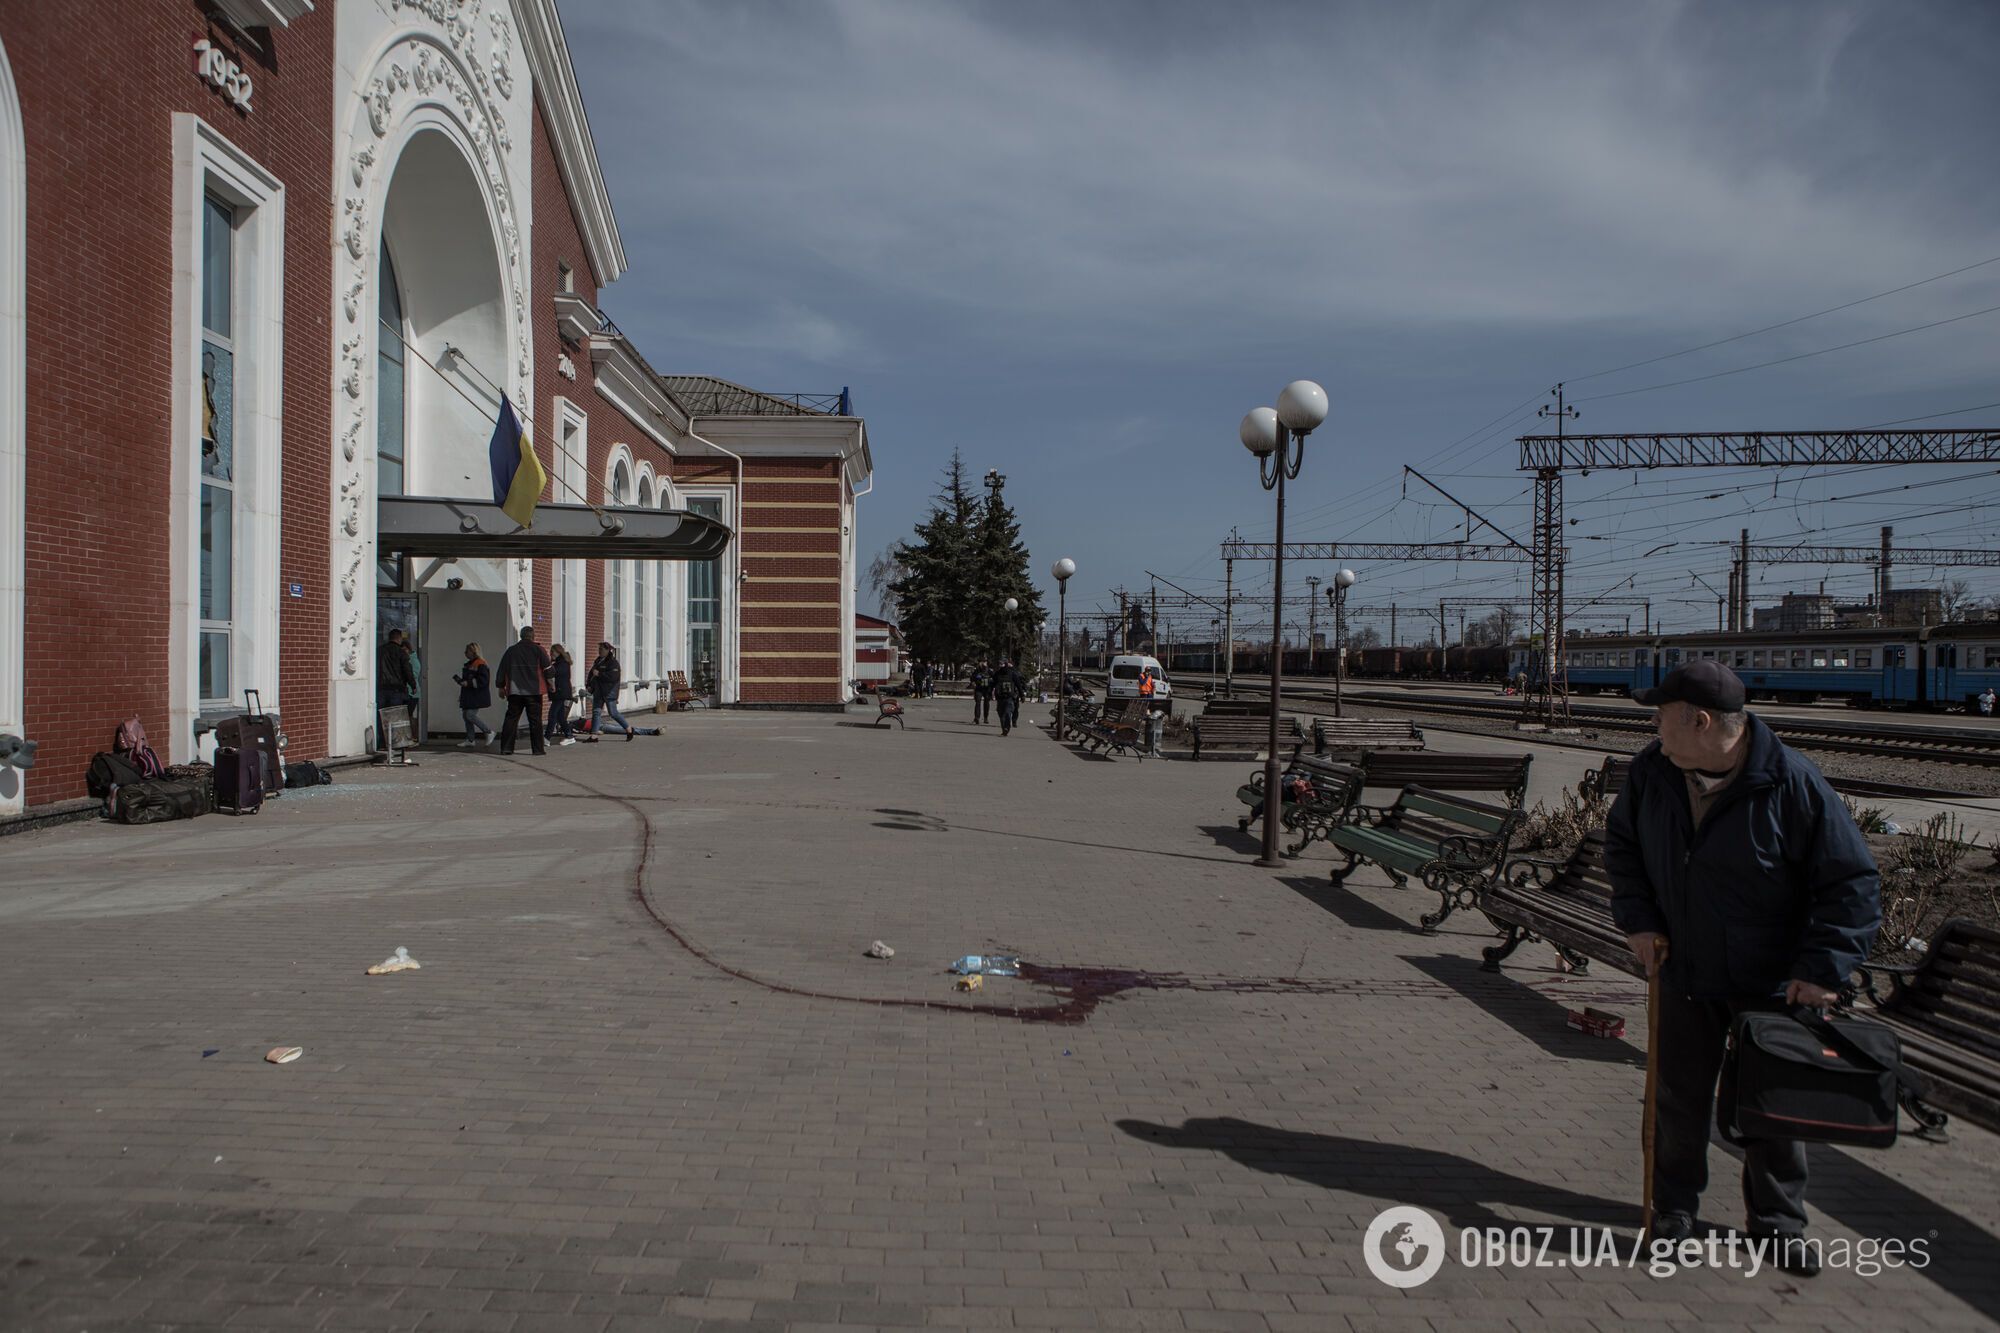 Андрей Шевченко не смог сдержать эмоций после геноцида украинцев в Краматорске: мир должен действовать сейчас